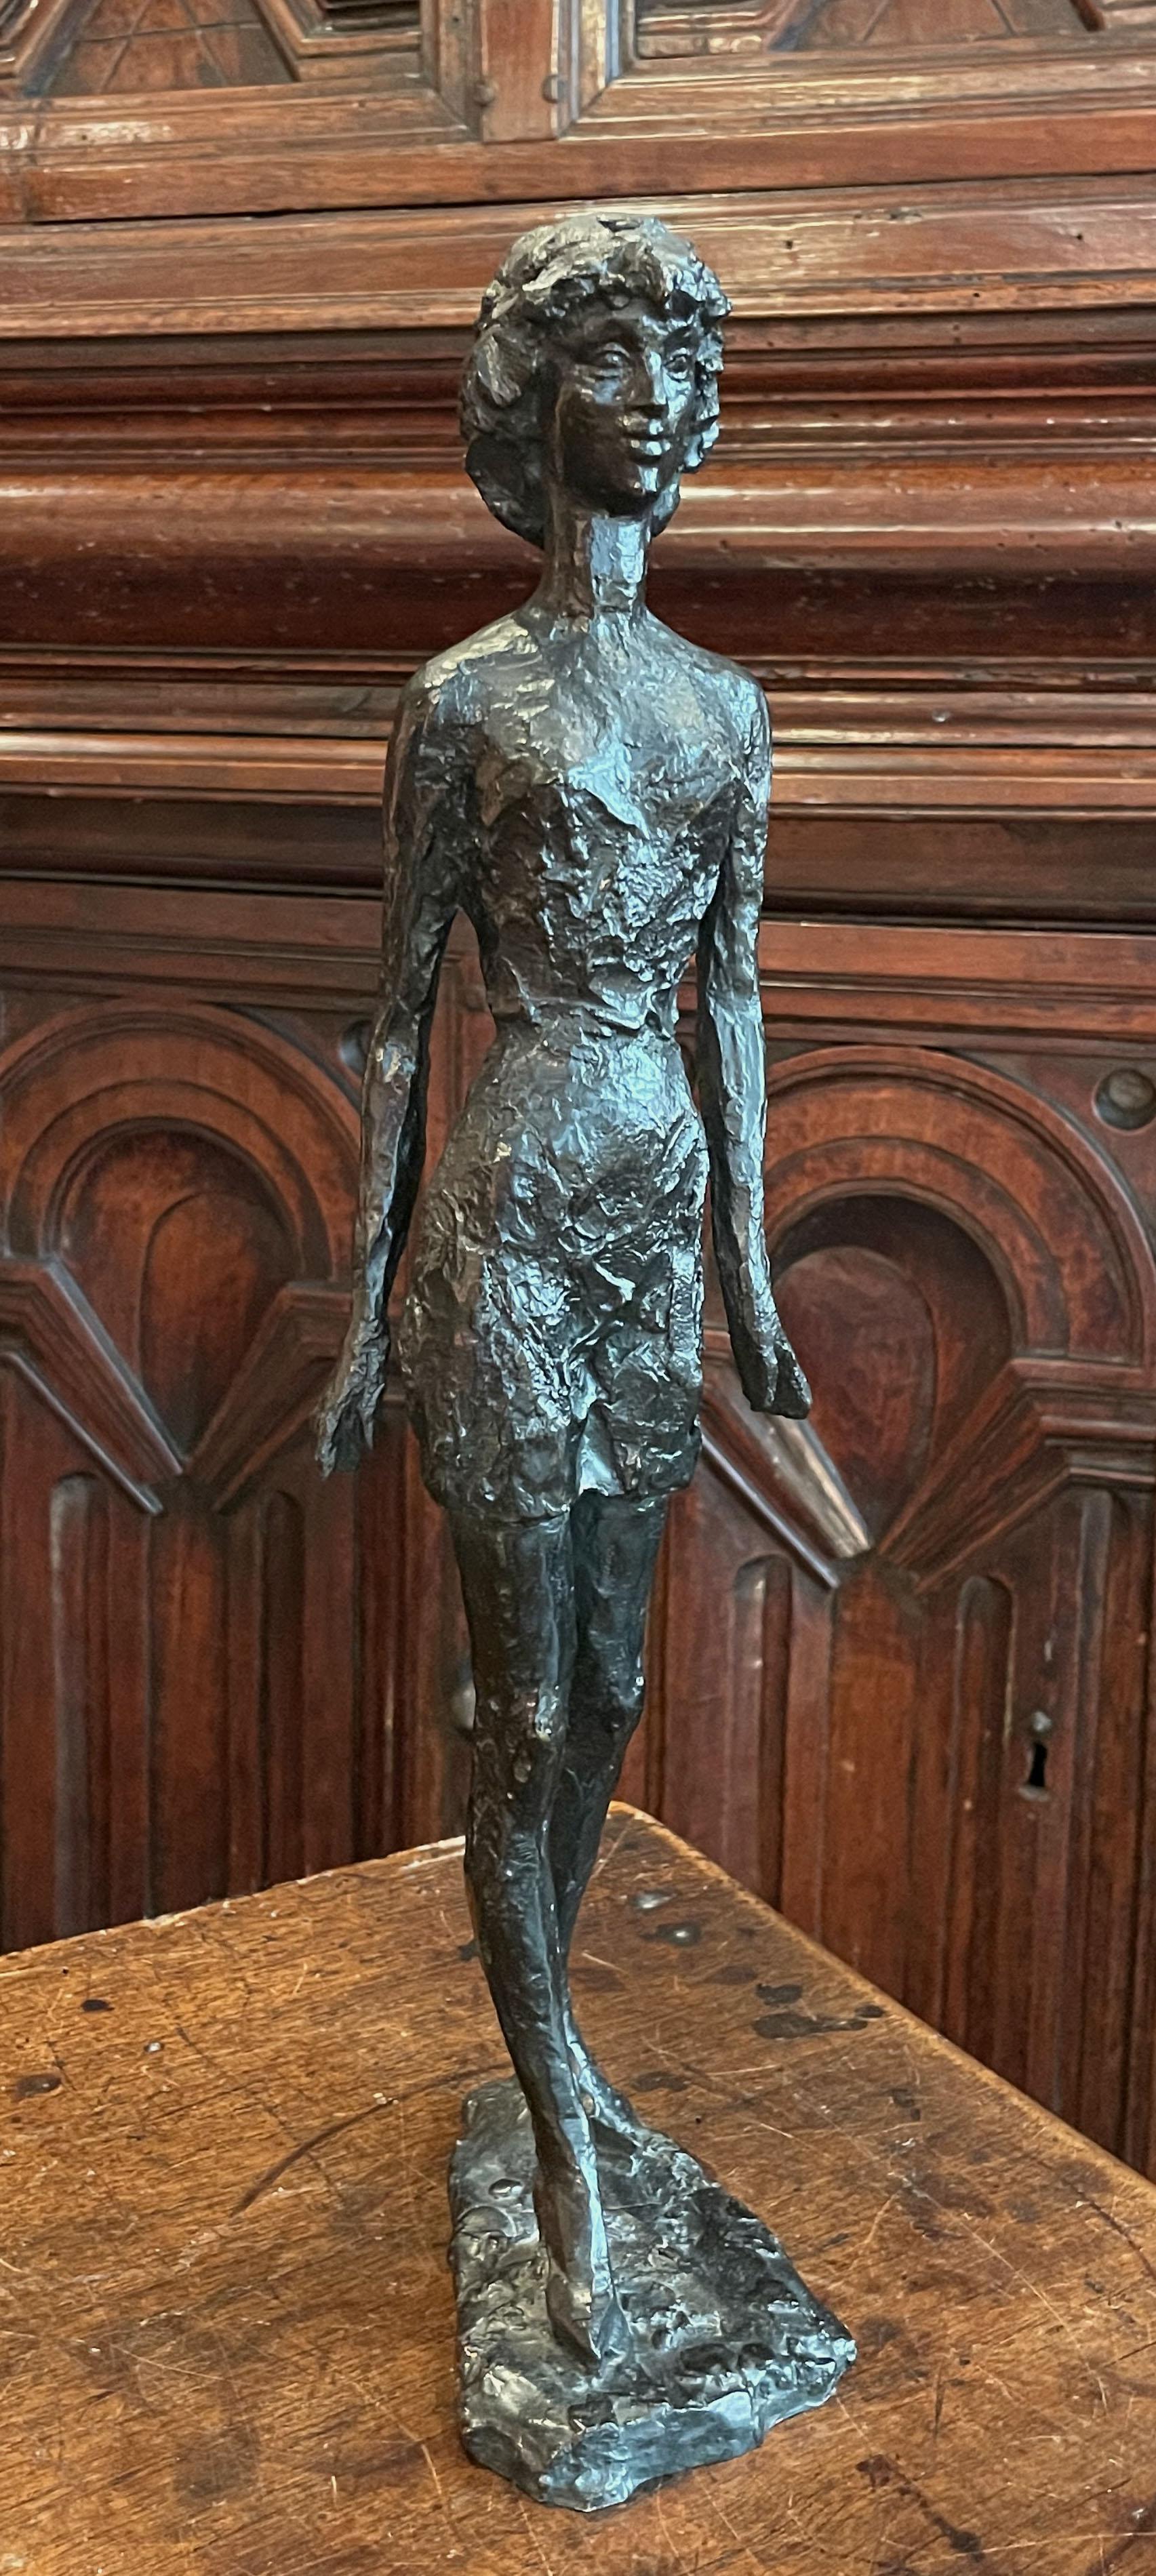 Junge Frau, 1967

Bronzeskulptur, Wachsausschmelzverfahren
Signiert 